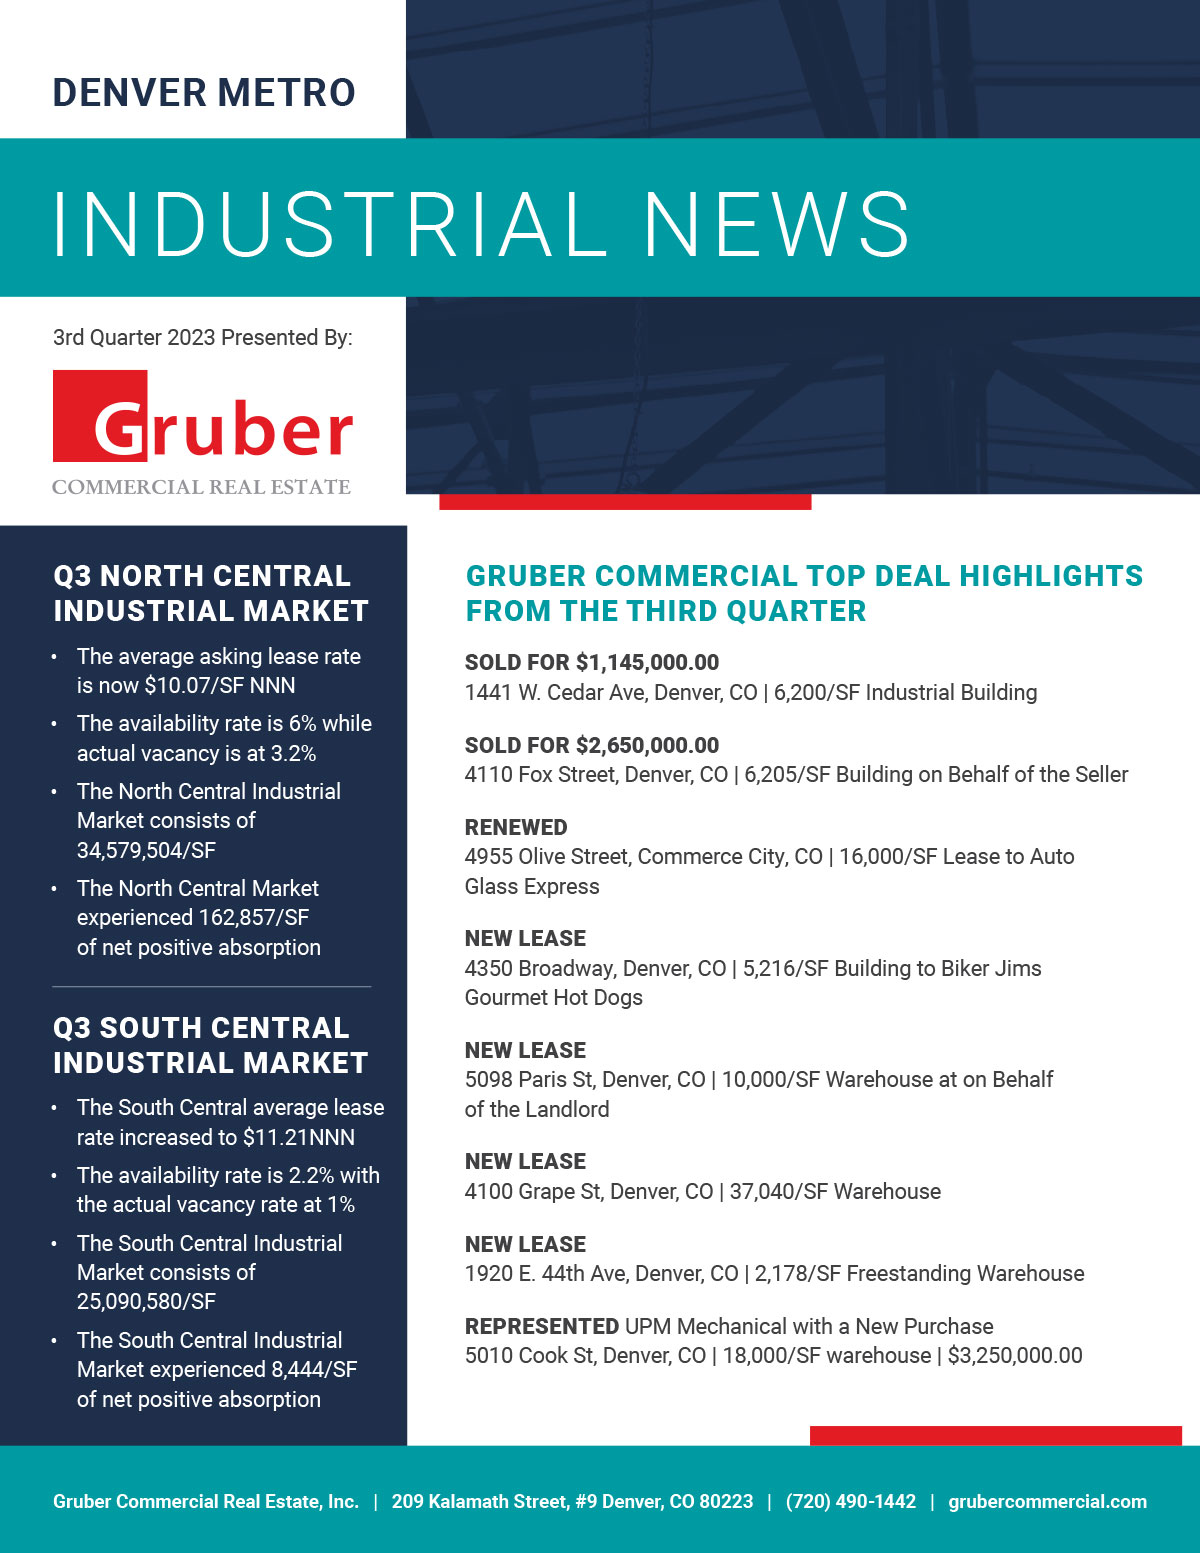 Gruber Newsletter: 3rd Quarter 2023